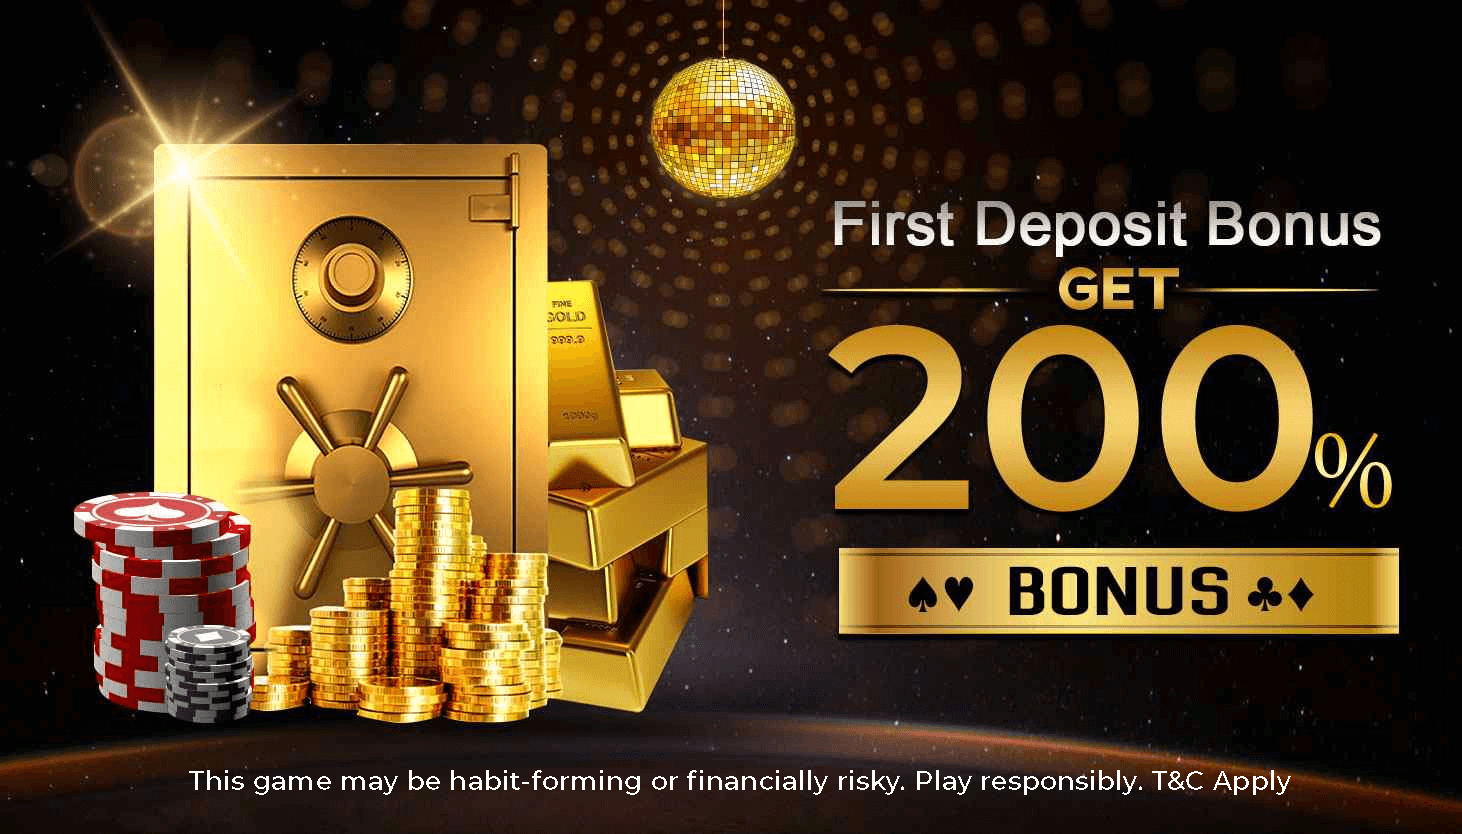 free poker deposit bonus